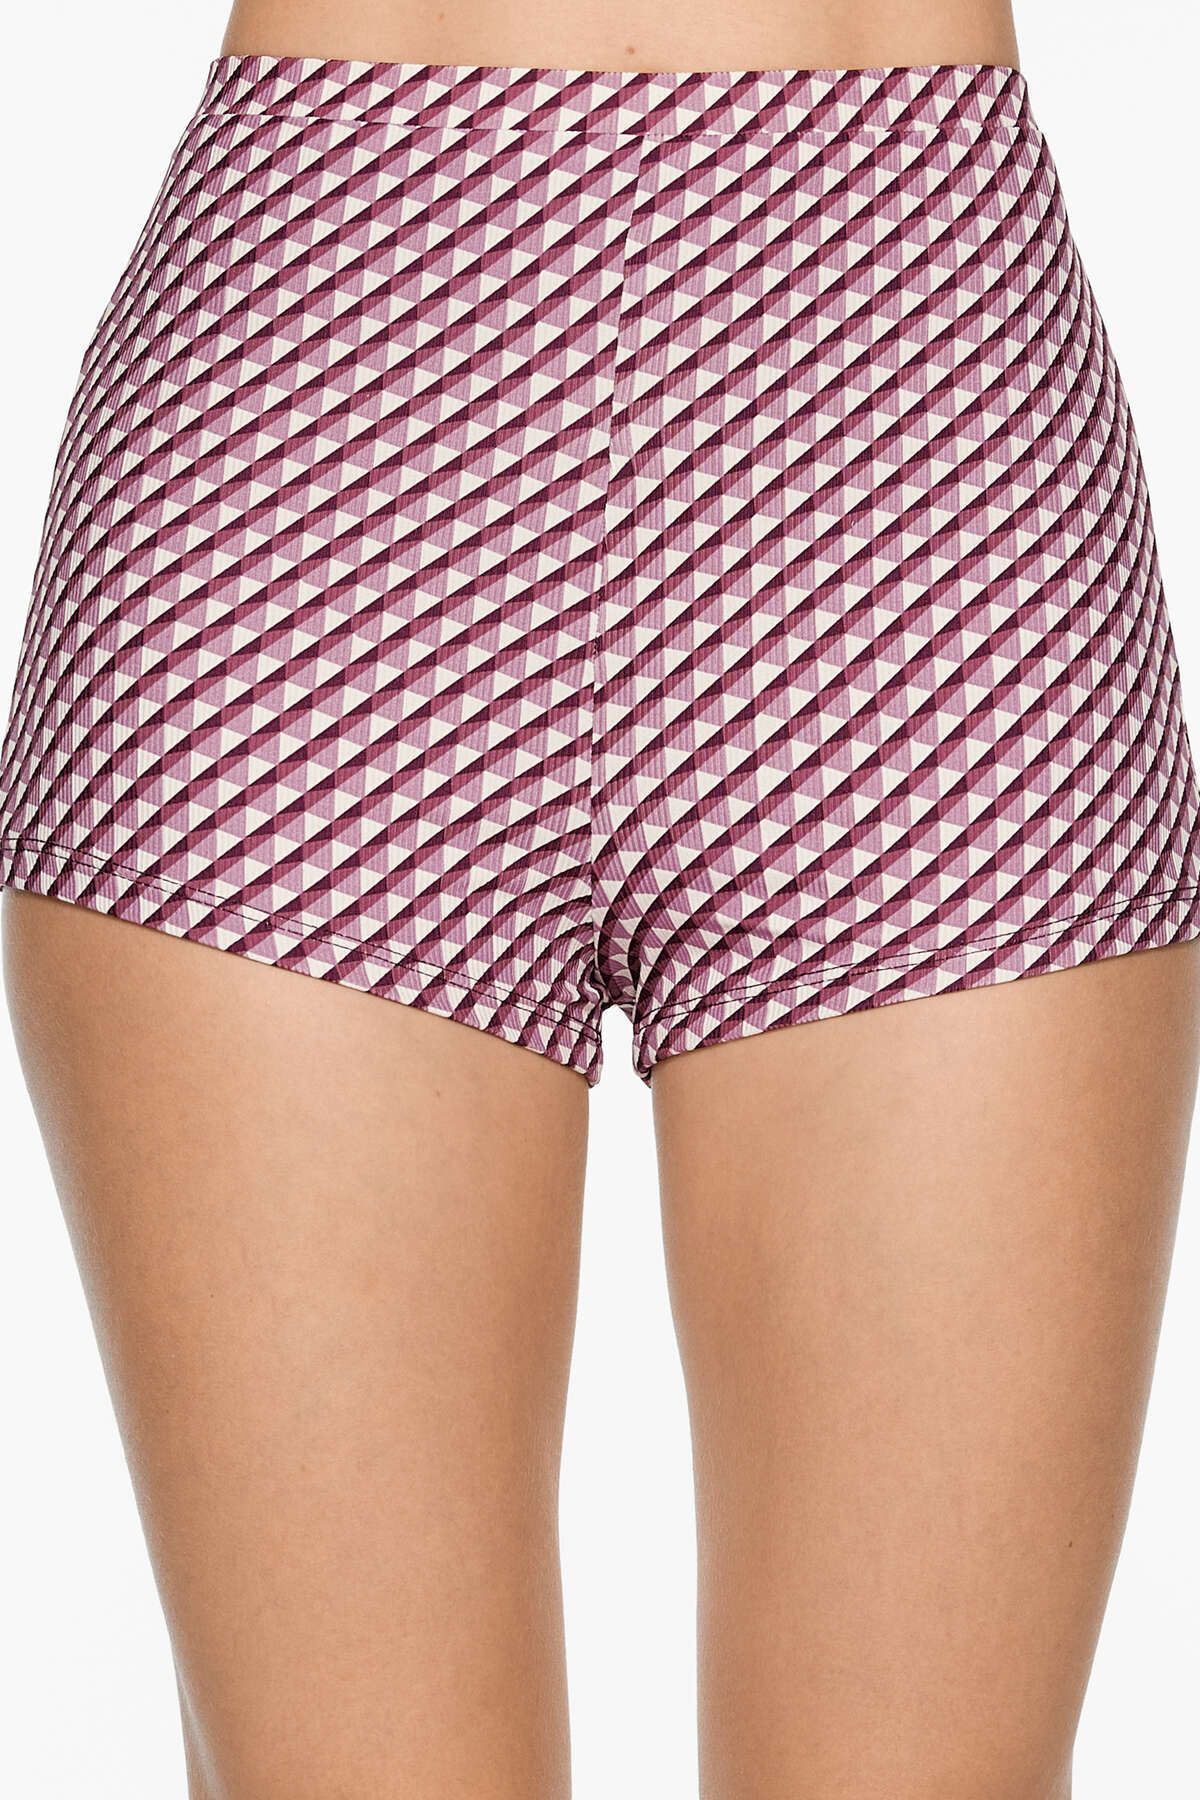 Oysho Geometrik desenli hot pants bikini altı